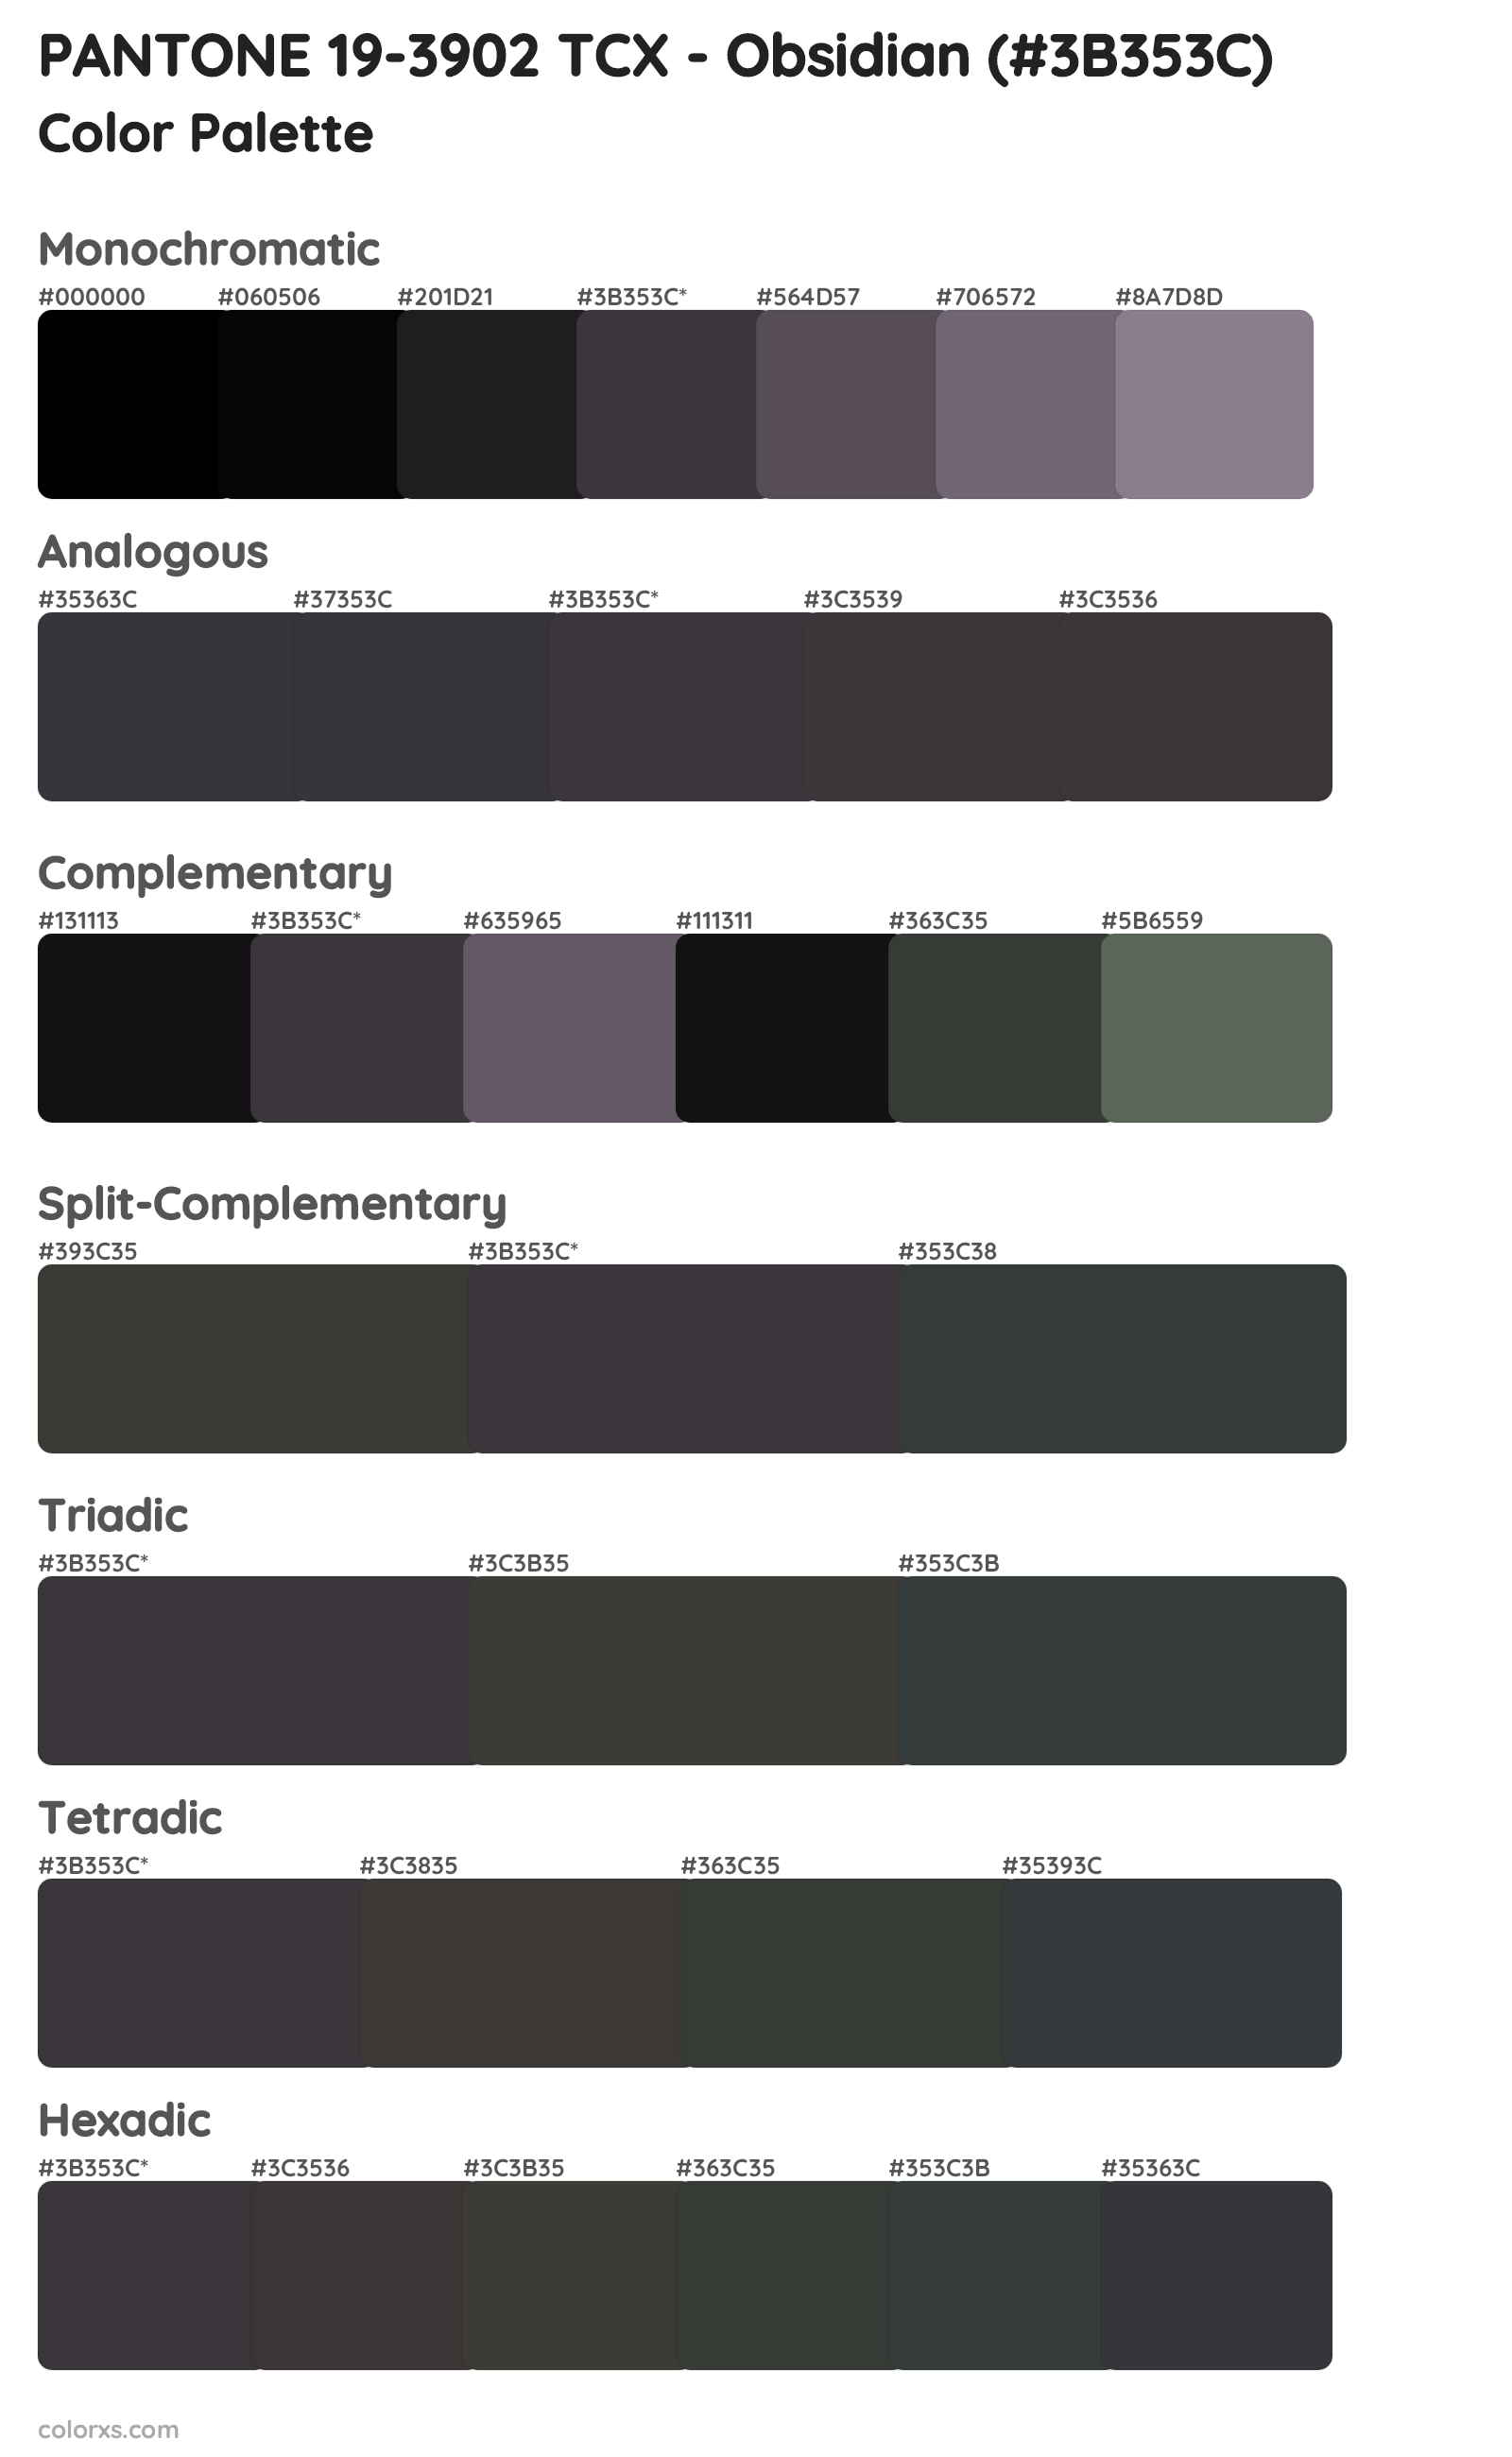 PANTONE 19-3902 TCX - Obsidian Color Scheme Palettes